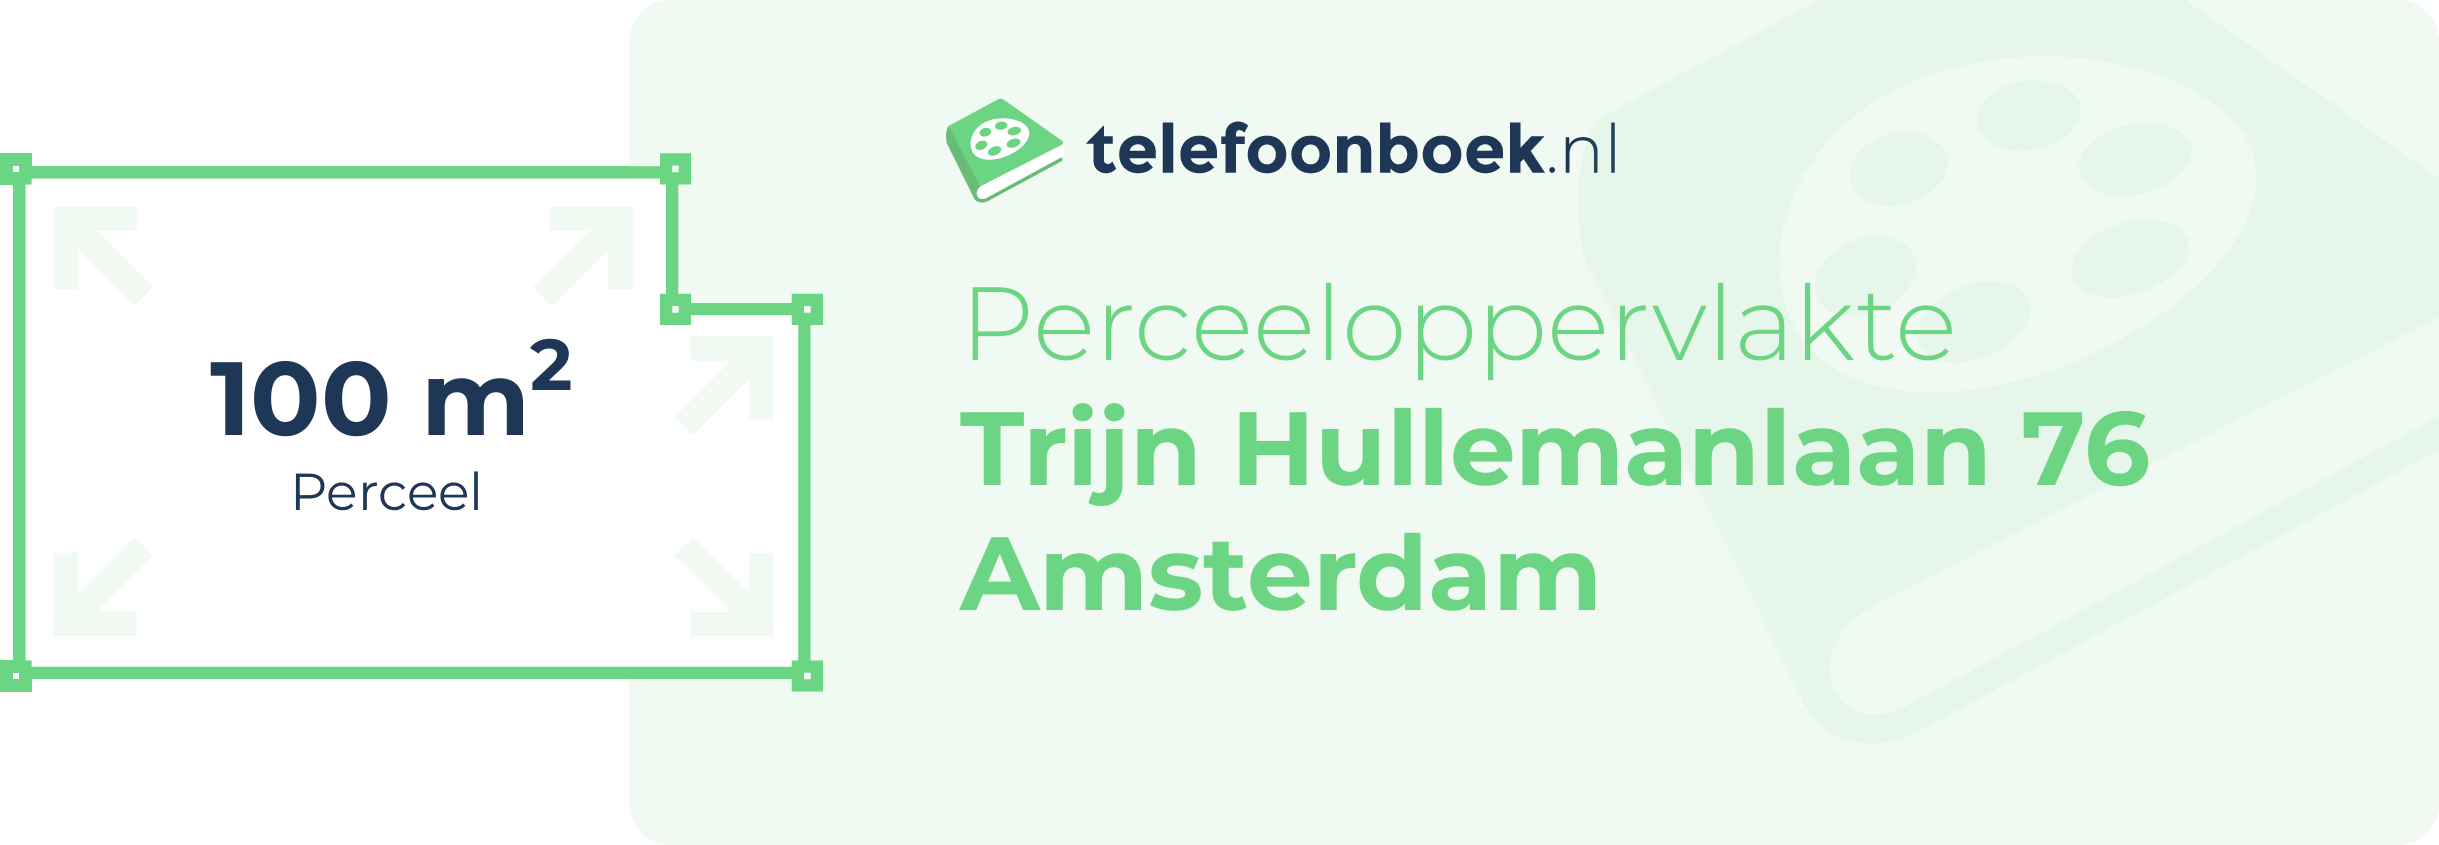 Perceeloppervlakte Trijn Hullemanlaan 76 Amsterdam